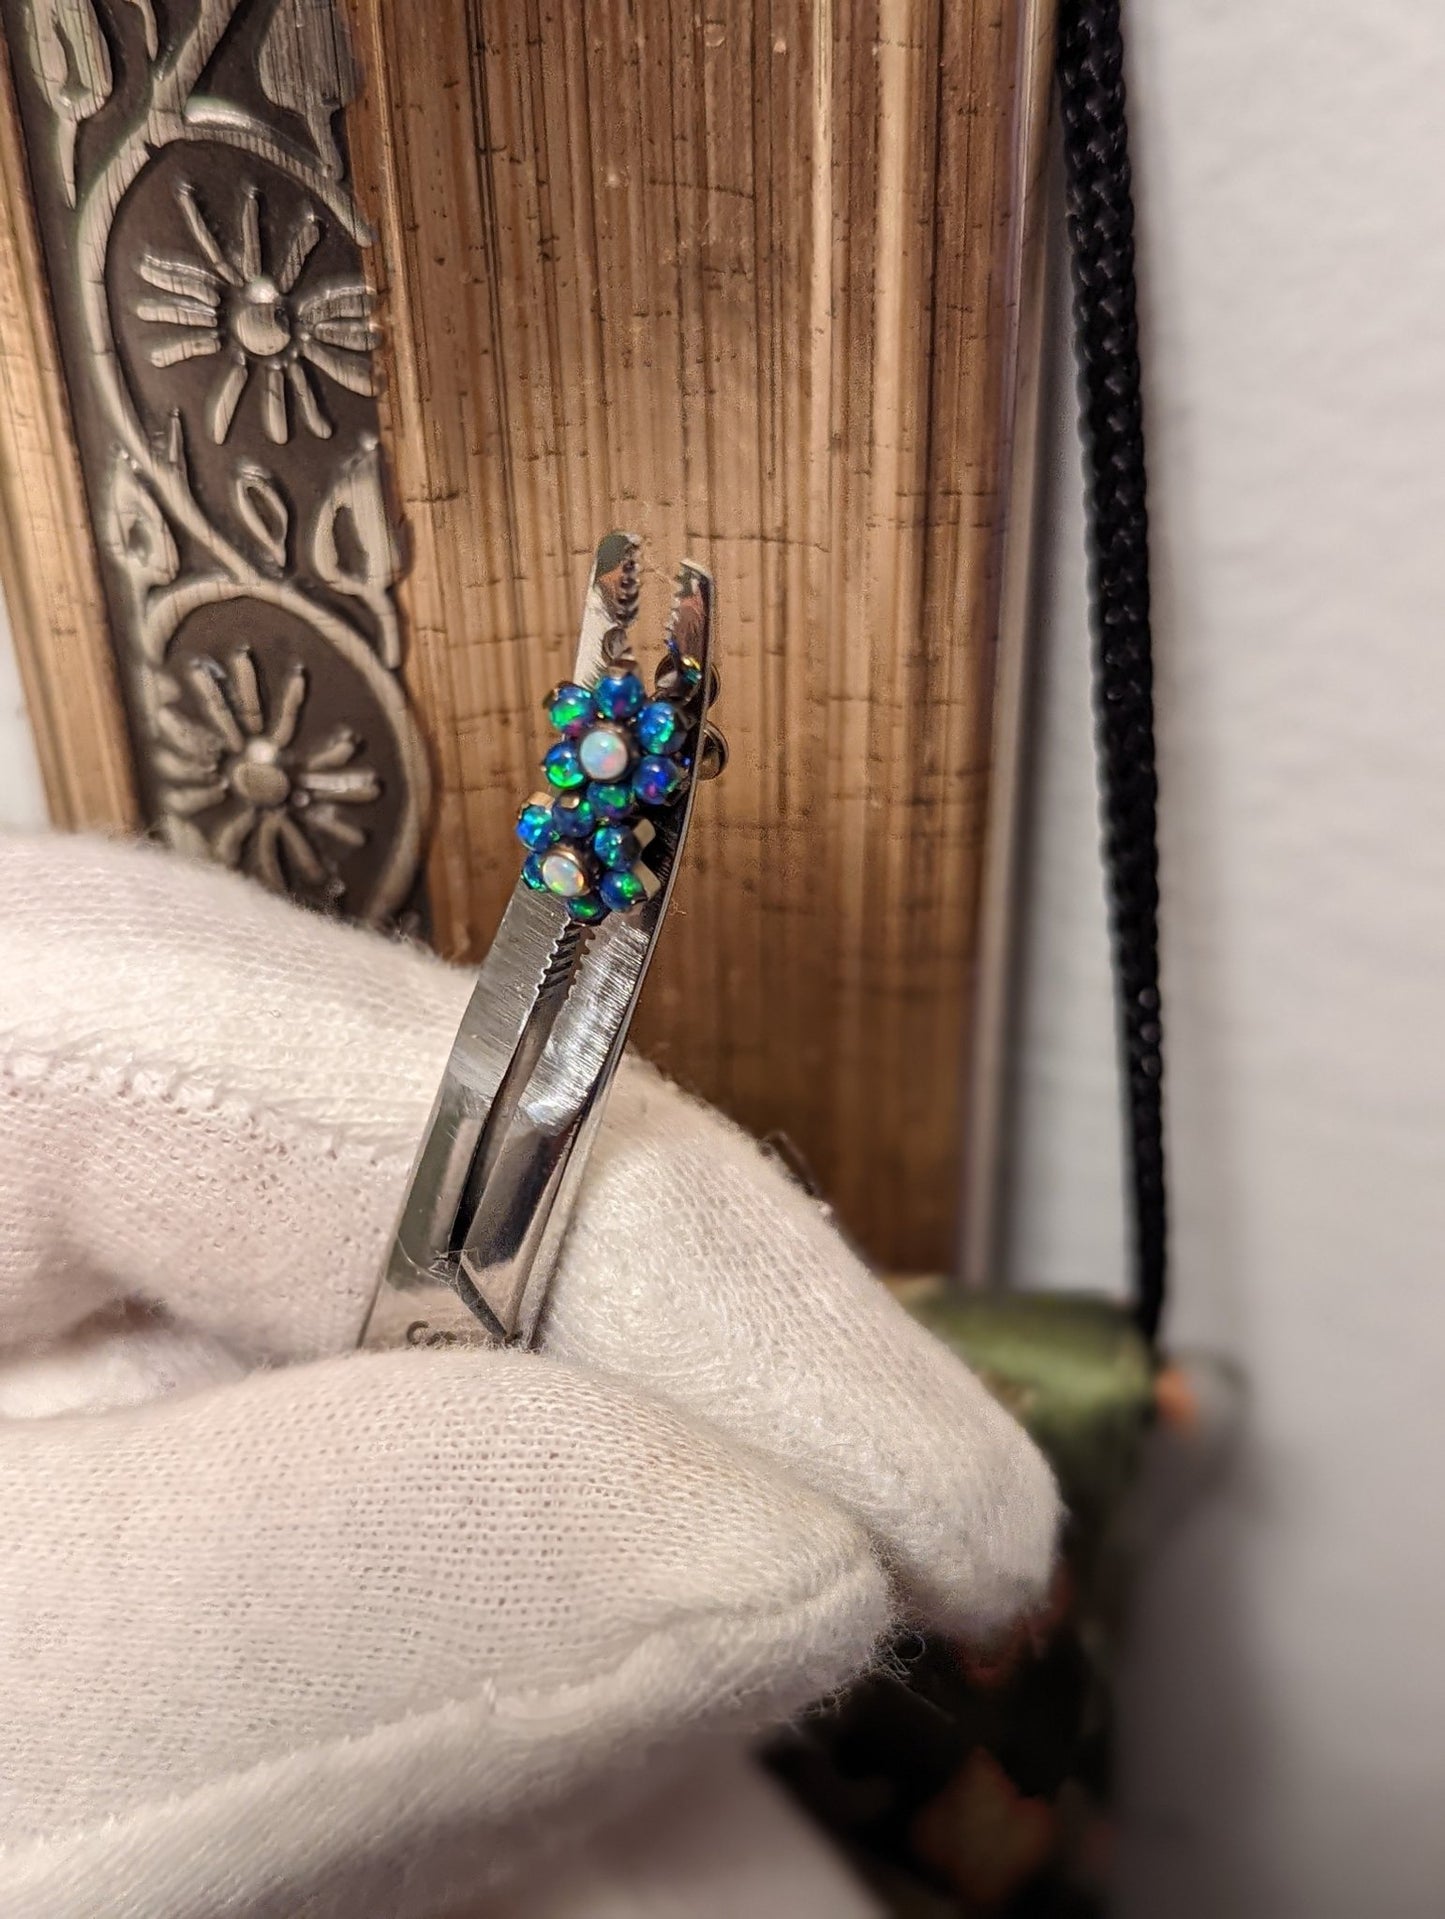 16g Titanium flat back labret stud opal flower earring studs purple blue green opals hypoallergenic earlobe conch helix body jewelry - Siren Body Jewelry